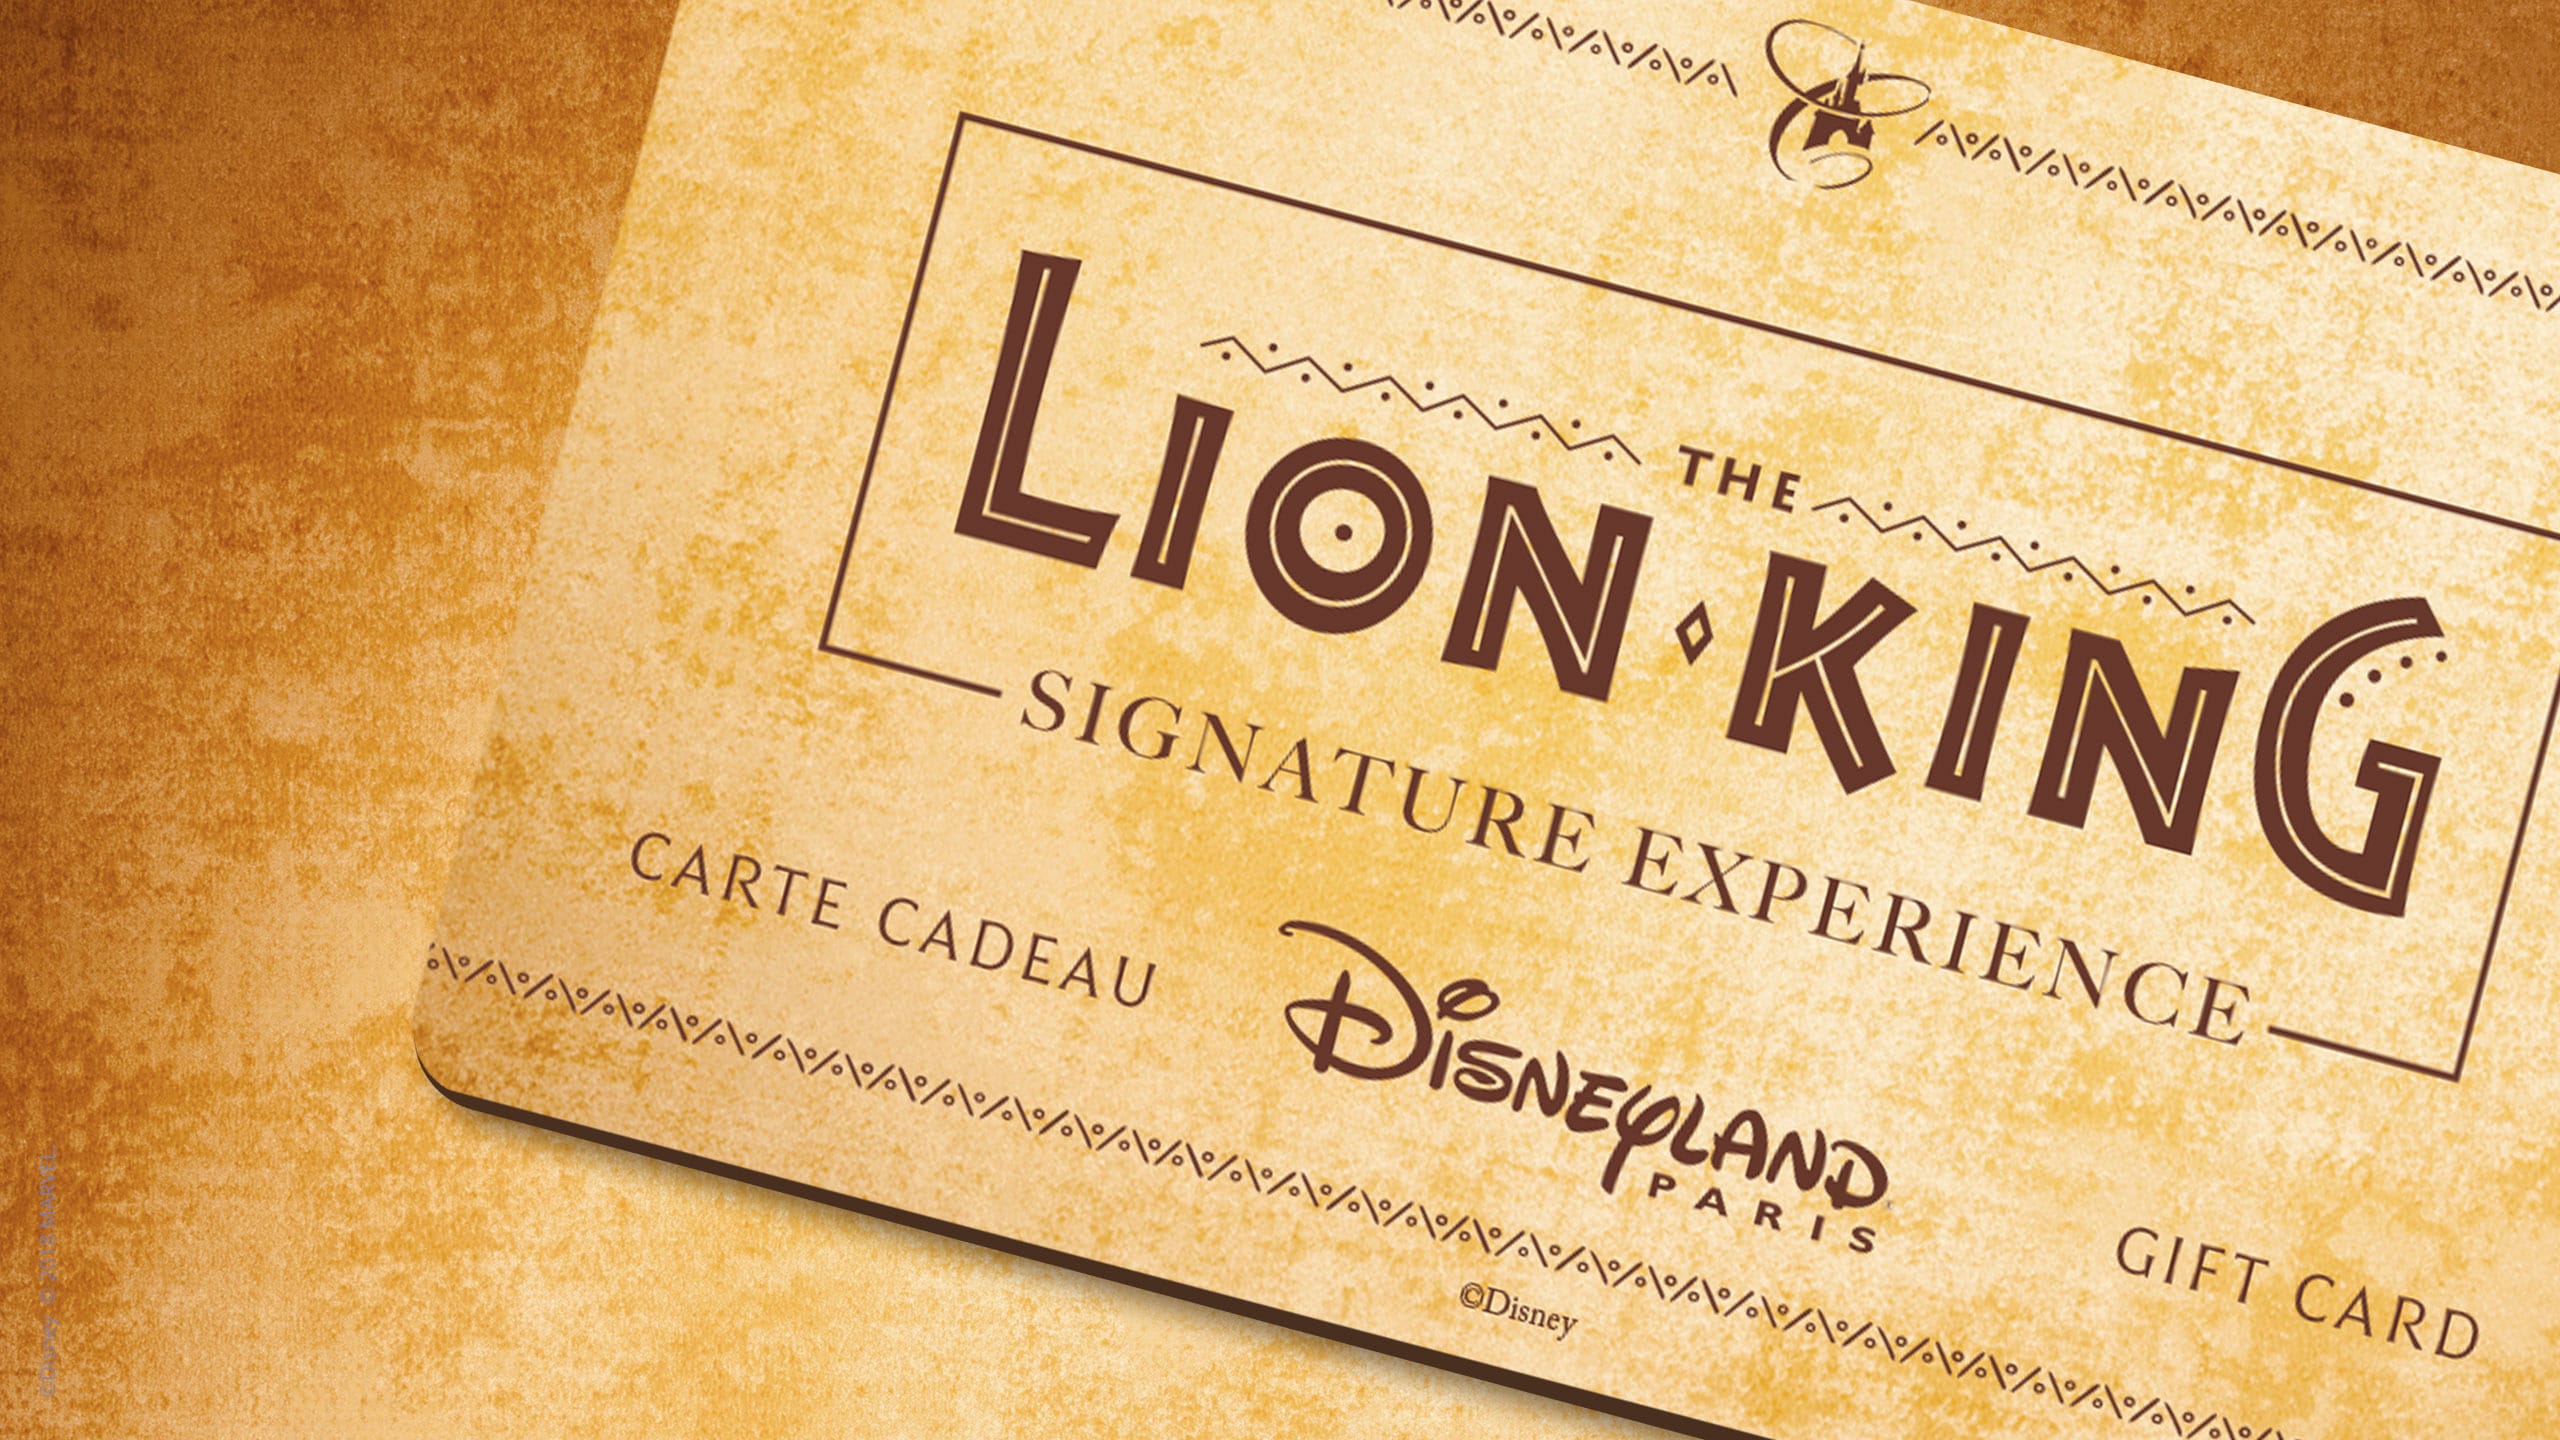 Disneyland Paris announces Lion King Signature to the Magic